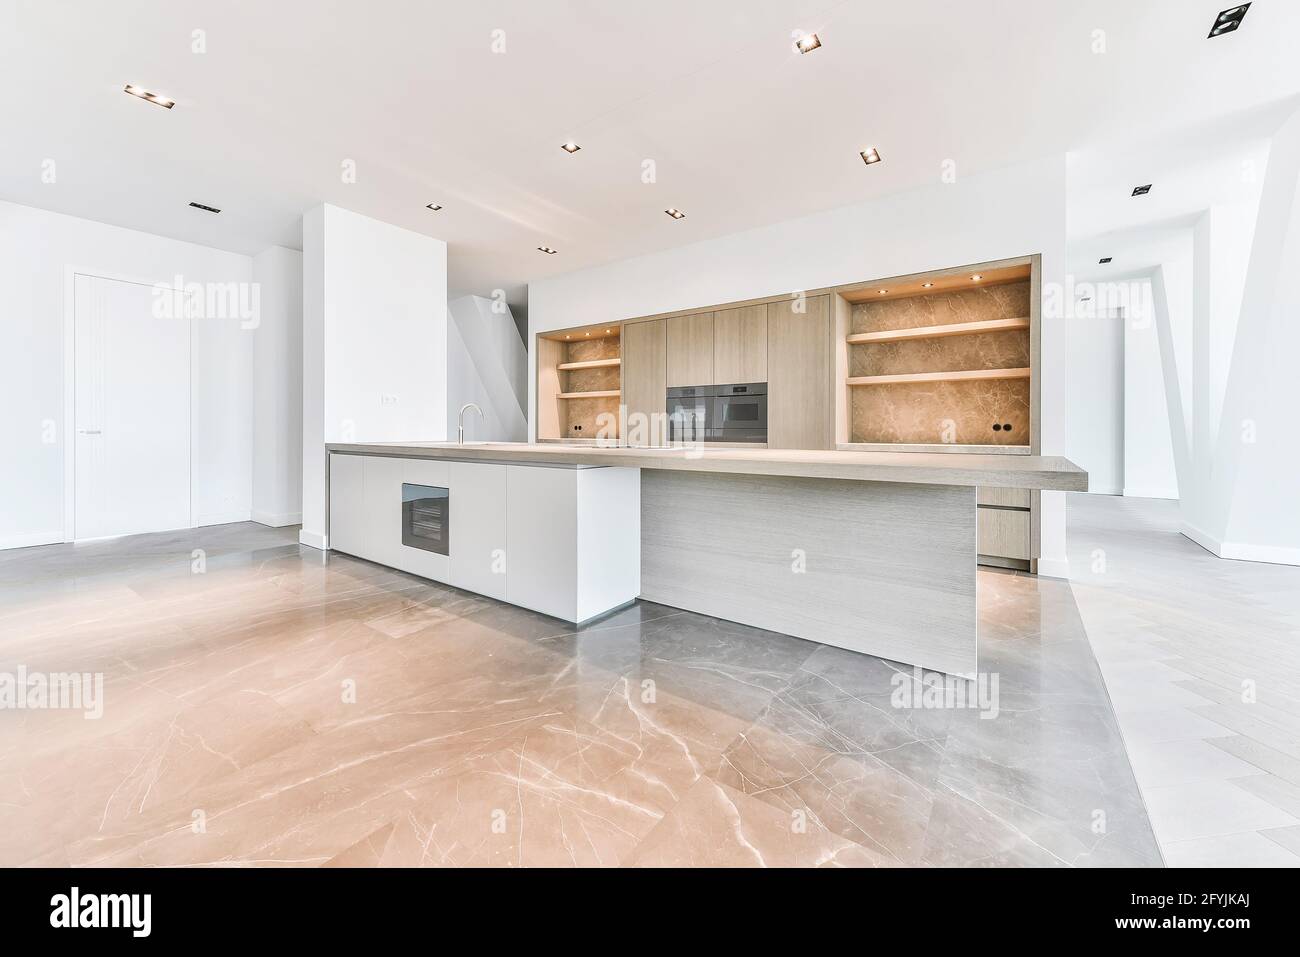 Intérieur de l'appartement de grand standing avec parquet et sol en marbre et cuisine minimaliste avec armoires en bois Banque D'Images